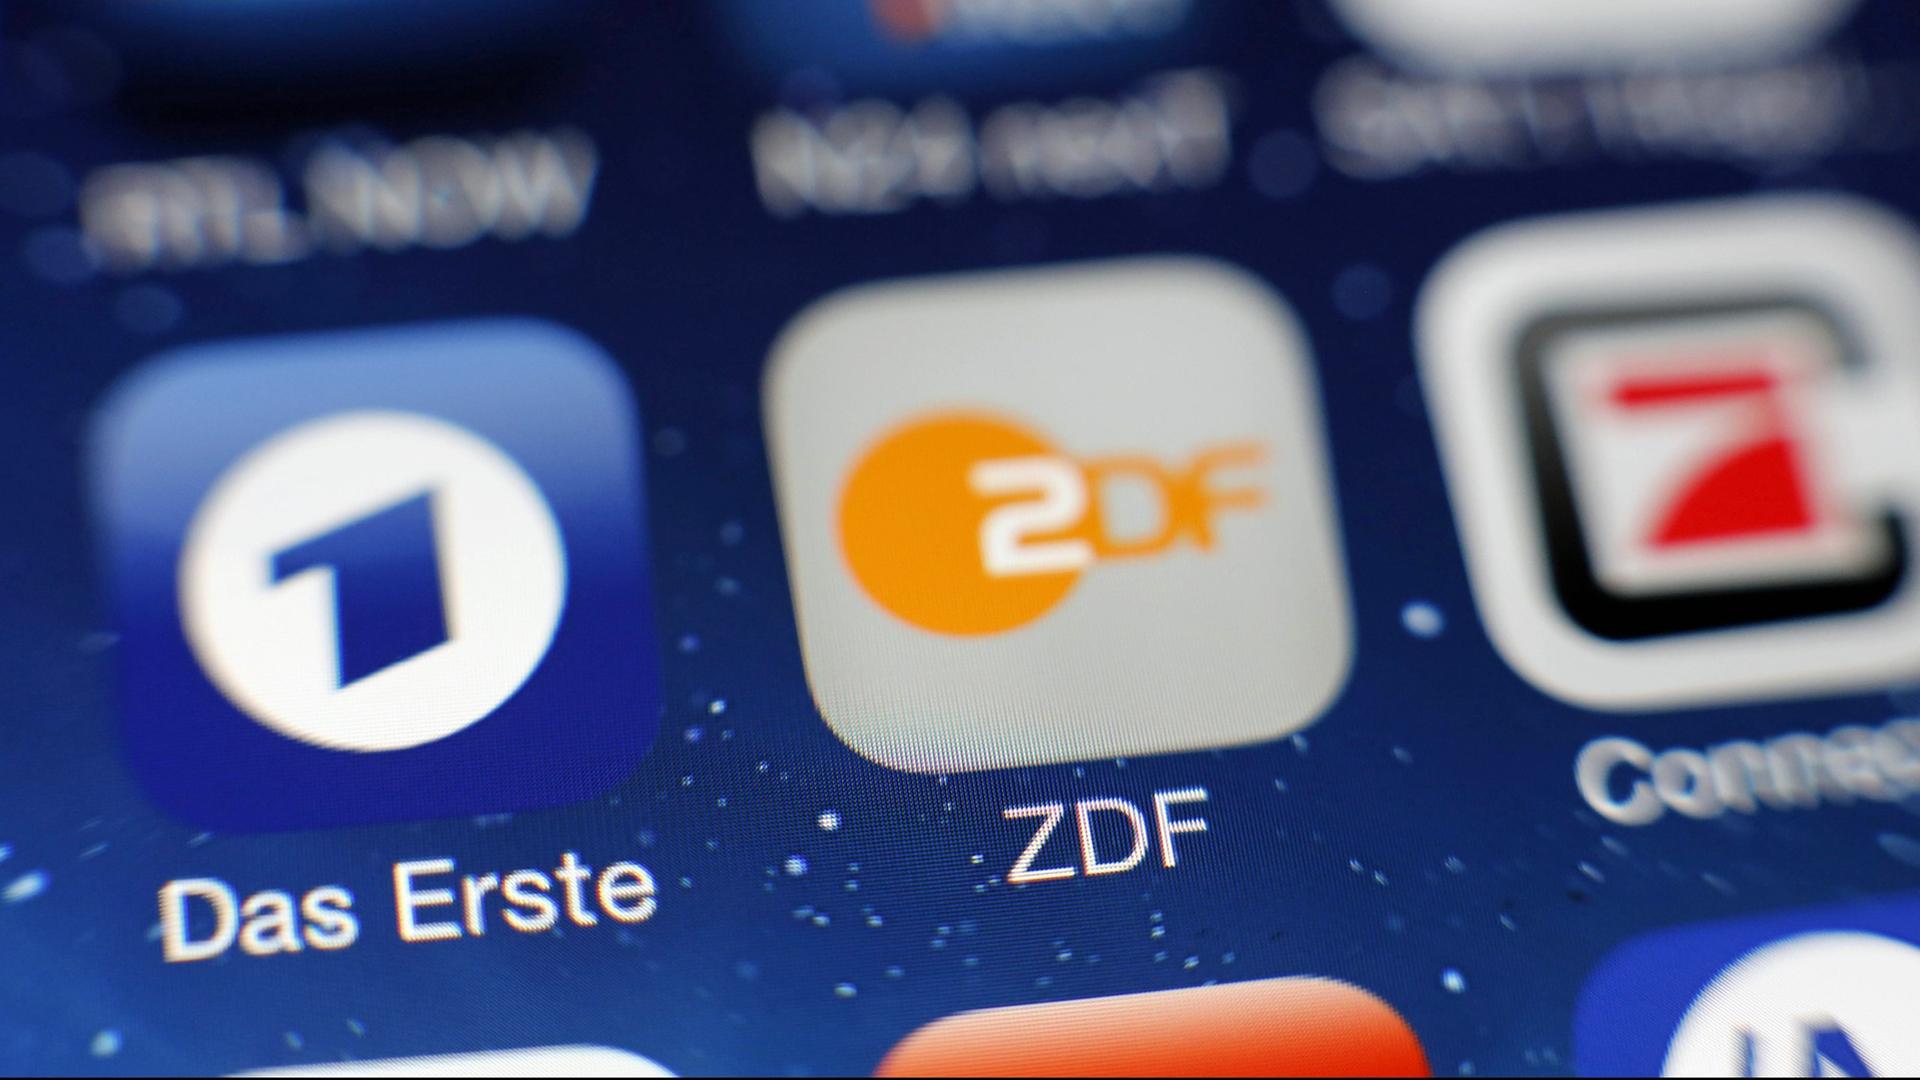 Die Logos von Das Erste und ZDF sind auf dem Touchscreen eines Smartphones zu sehen.